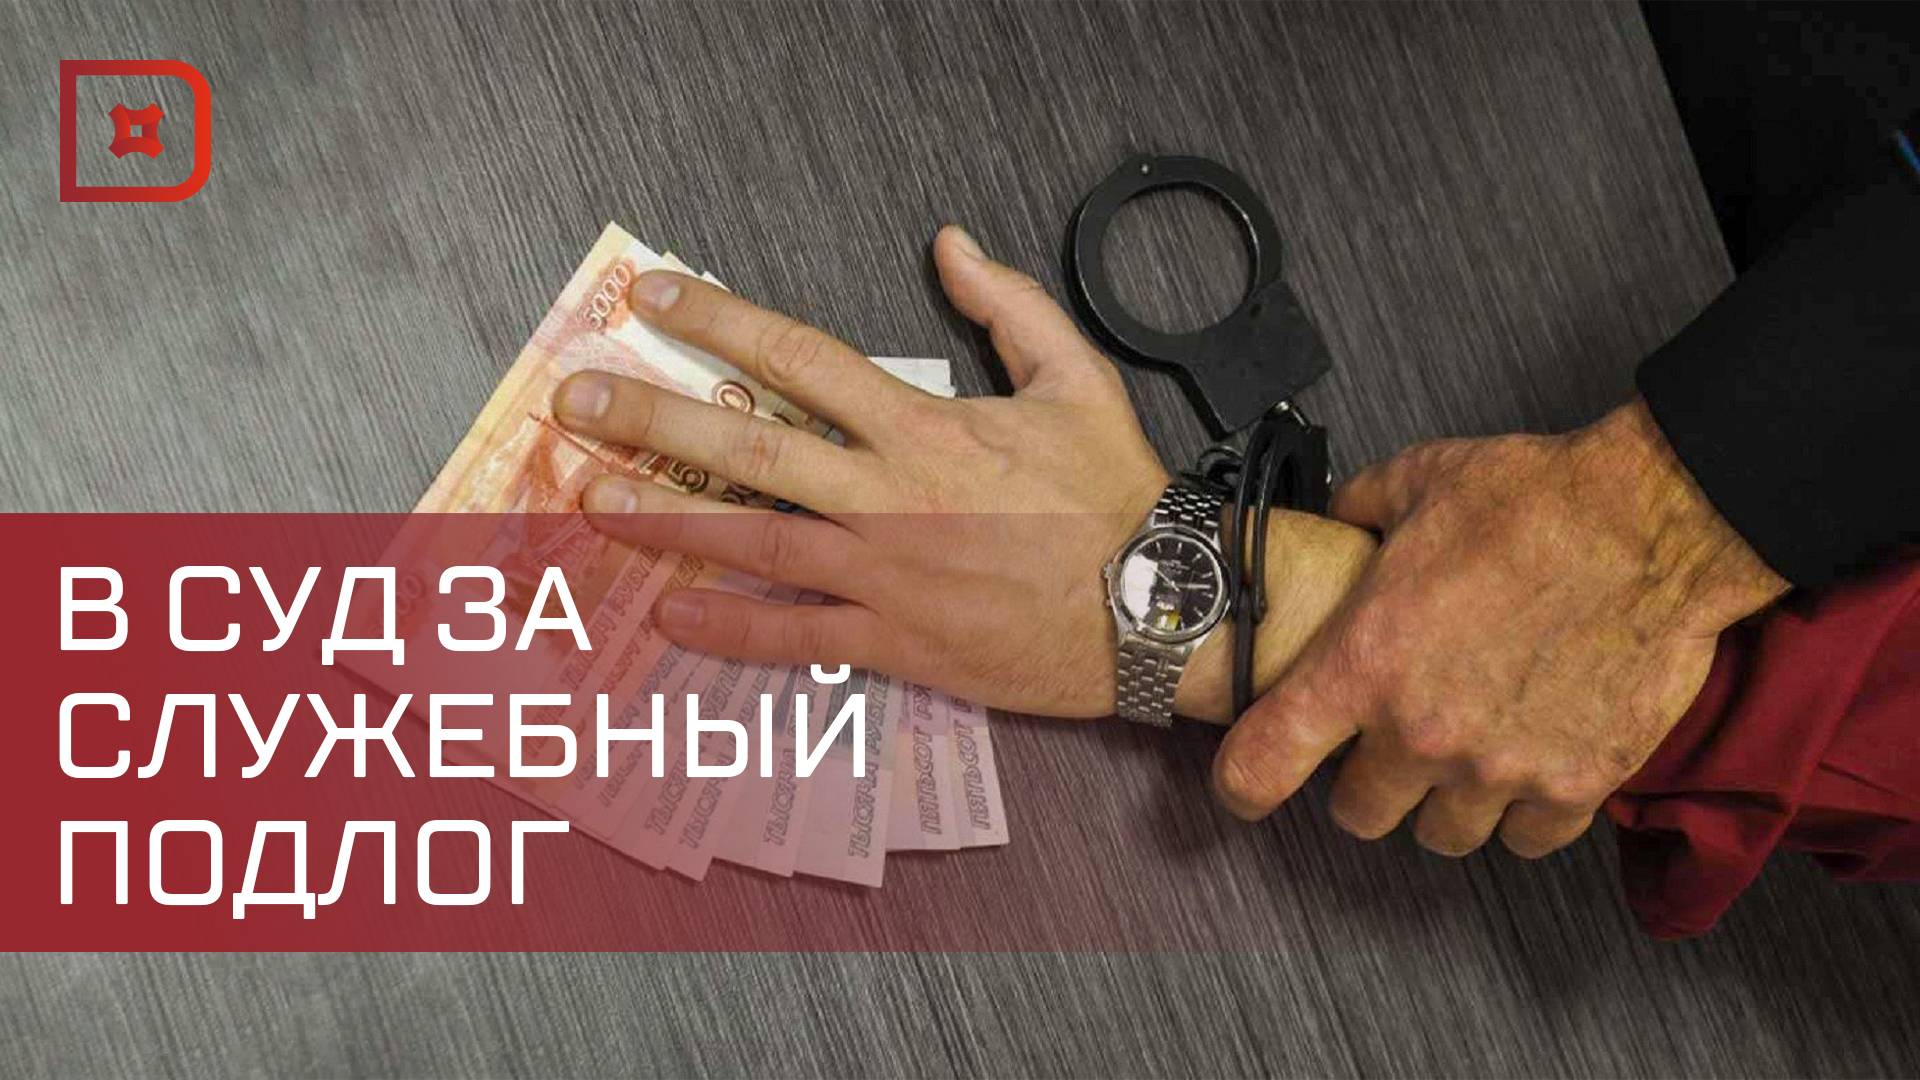 В Дагестане возбуждено дело о хищении зарплаты